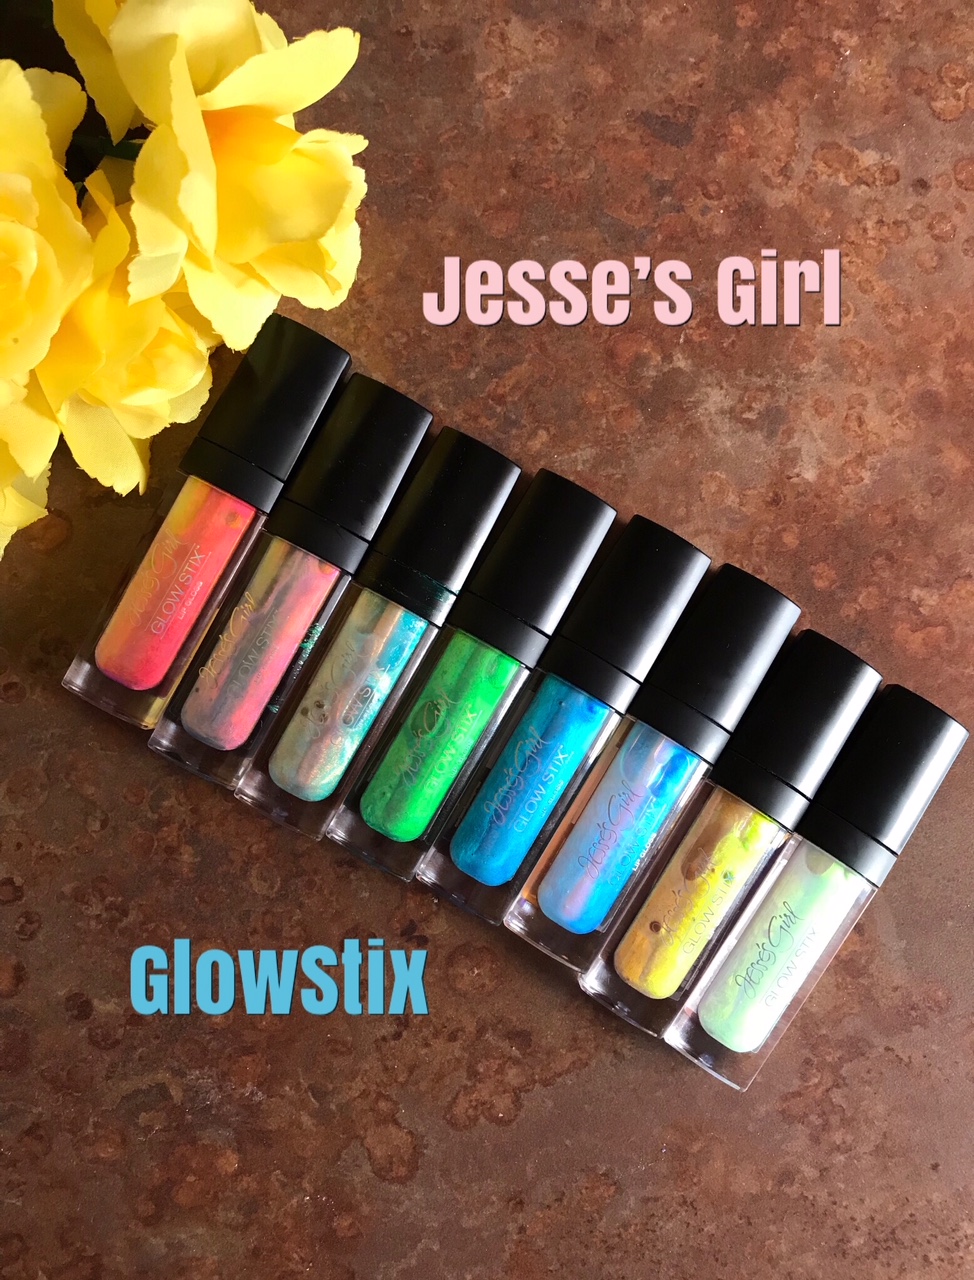 Jesse's Girl GlowStix lipgloss, neversaydiebeauty.com